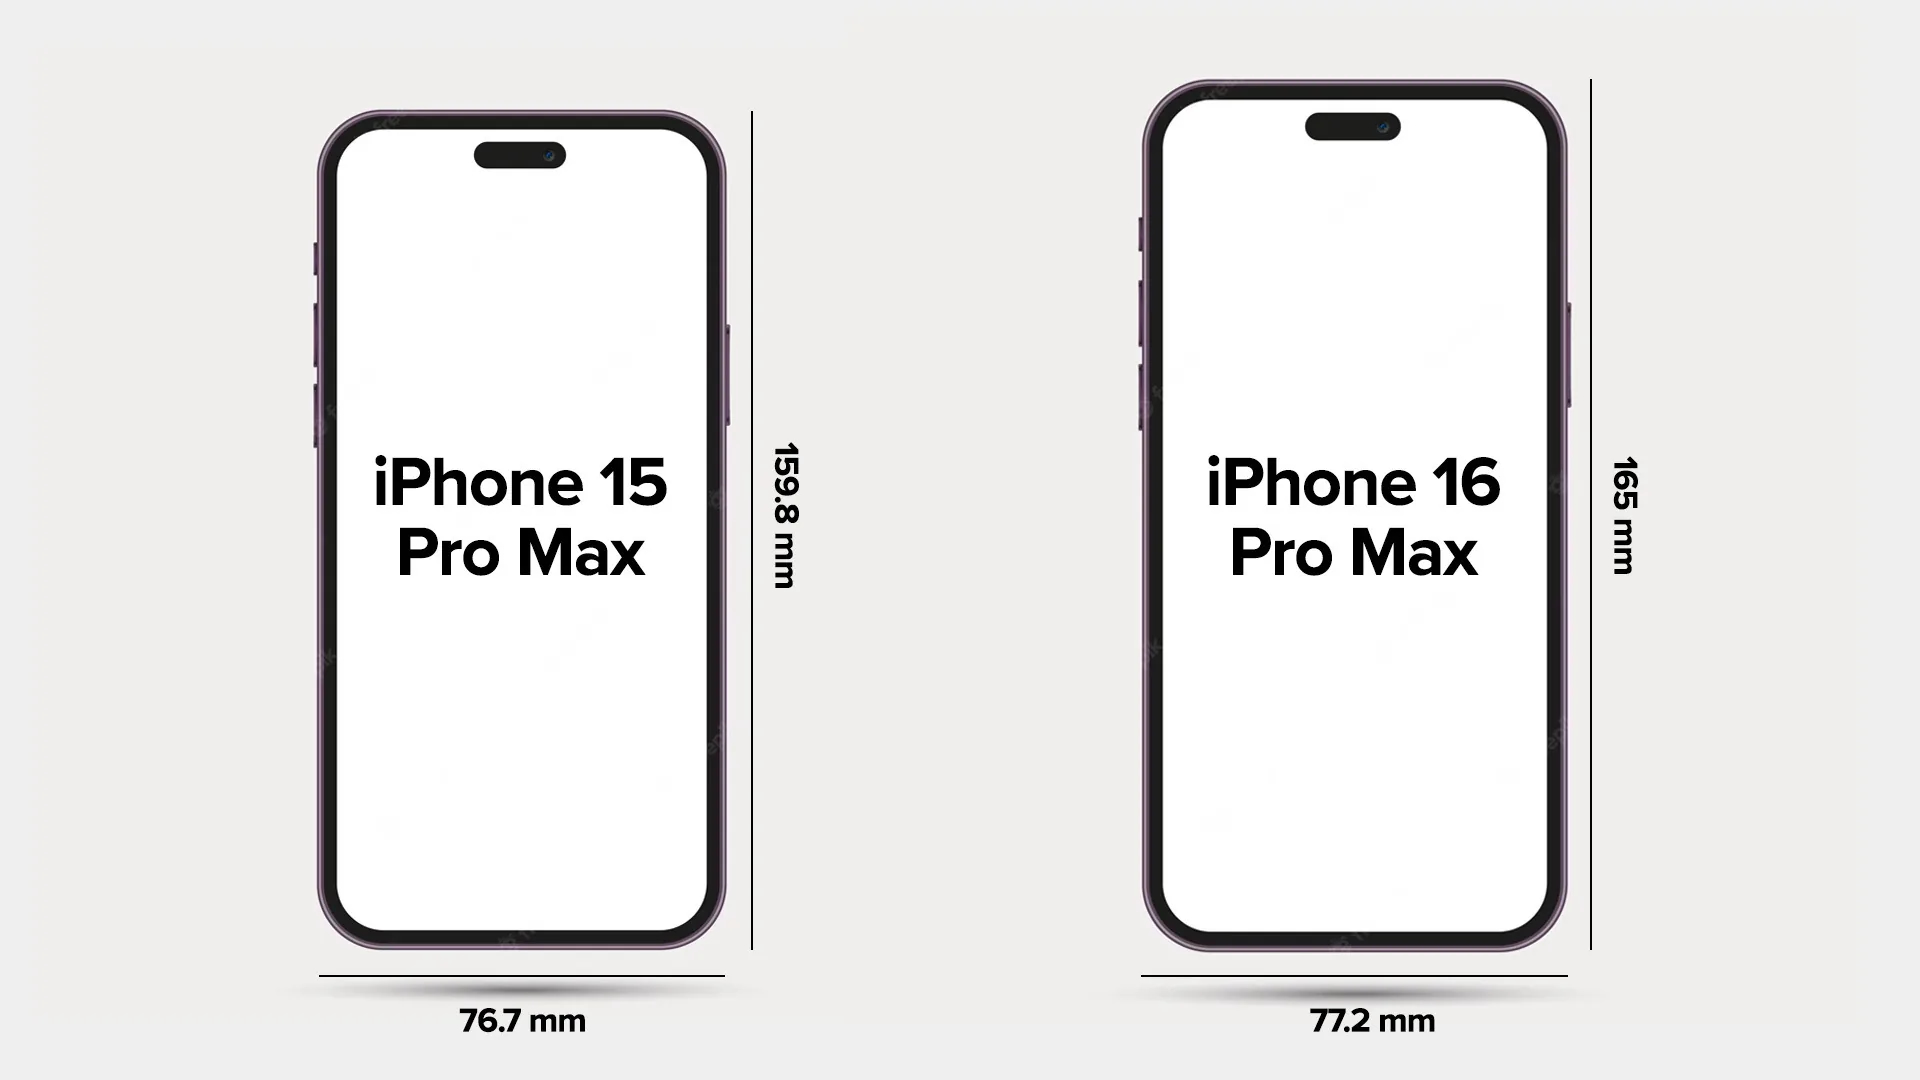 View - iPhone 16 Pro Max chuẩn bị lột xác với 2 màu mới tuyệt đẹp, áp đảo cả titan tự nhiên của iPhone 15 Pro